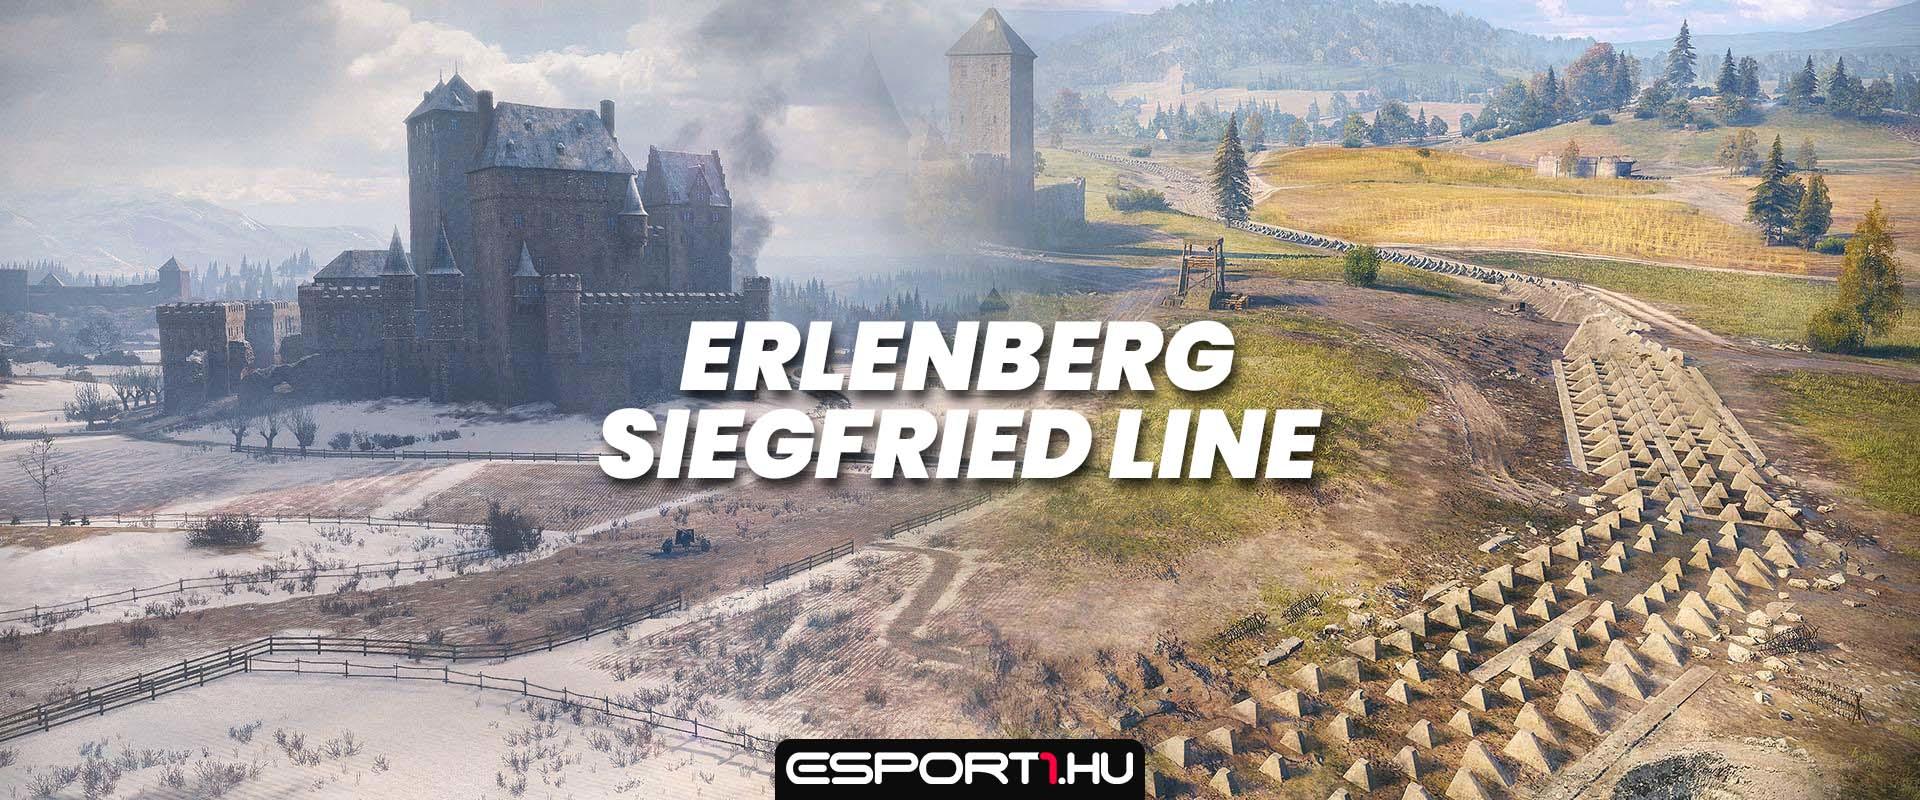 Siegfried Line és Erlenberg térkép változások